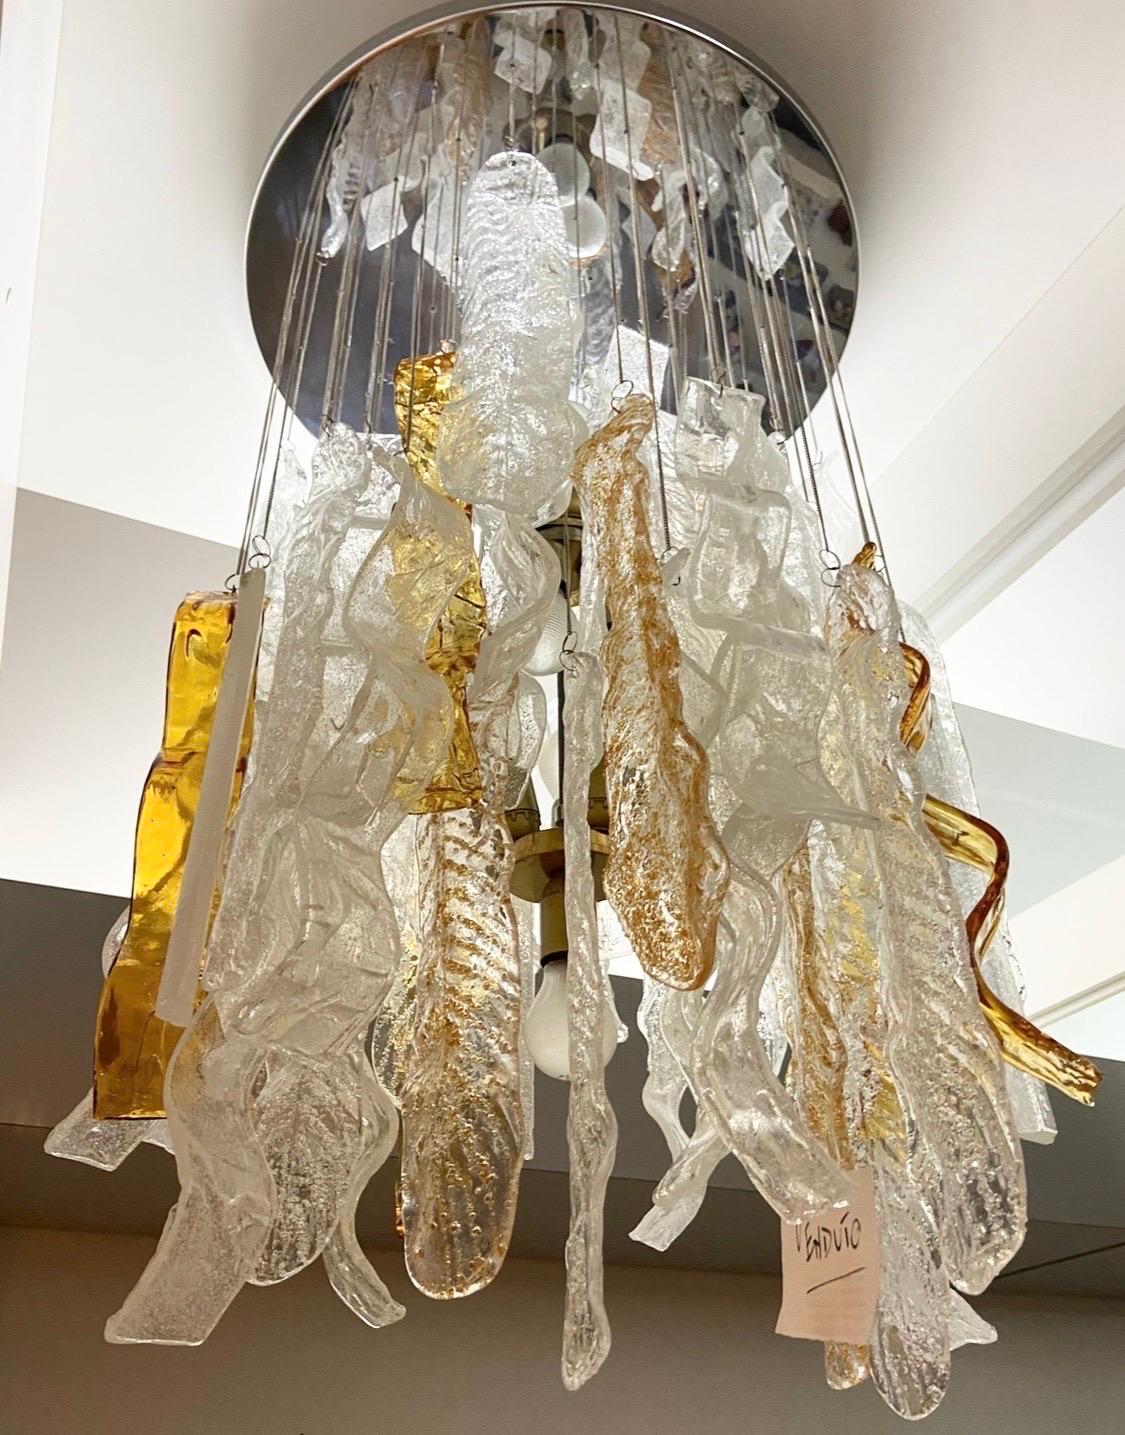 Un grand lustre en verre de Murano blanc et brun, conçu et fabriqué dans les années 70 par Mazzega, présente cinq types différents de grandes pampilles en verre de Murano, créant une lumière d'ambiance étonnante. Les éléments en verre de Murano sont